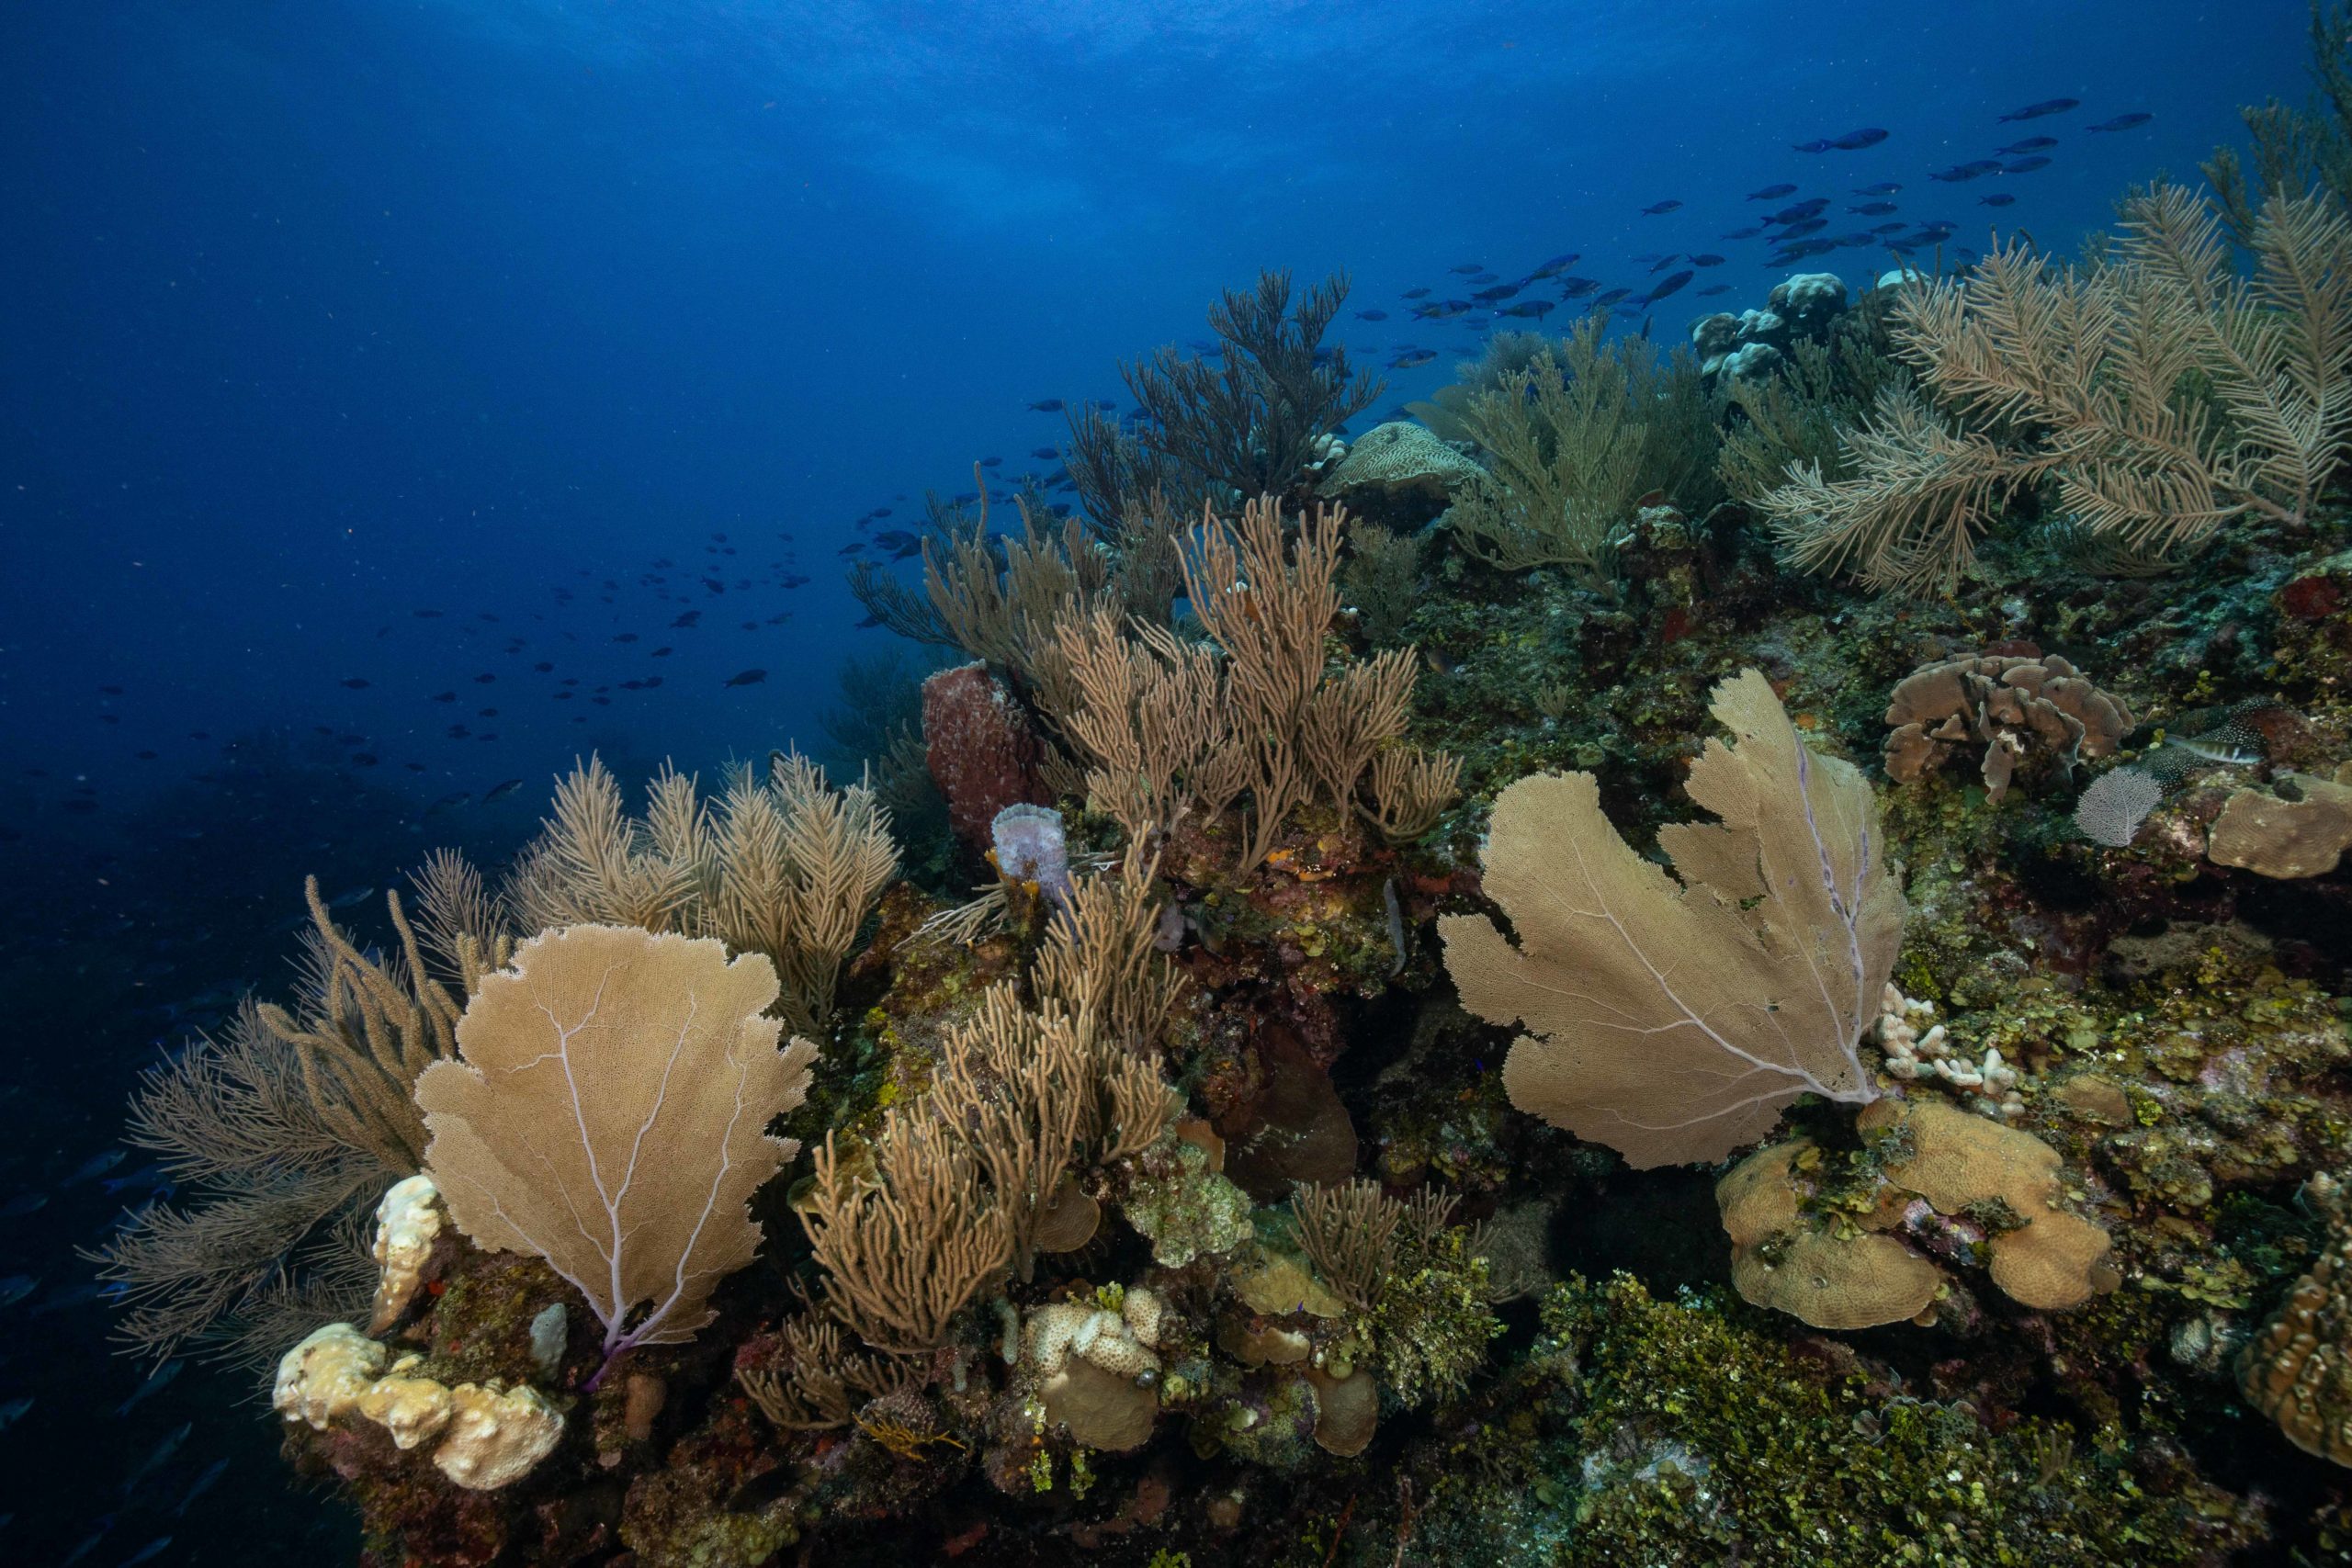 Coral reef in Cordelia Banks, Honduras